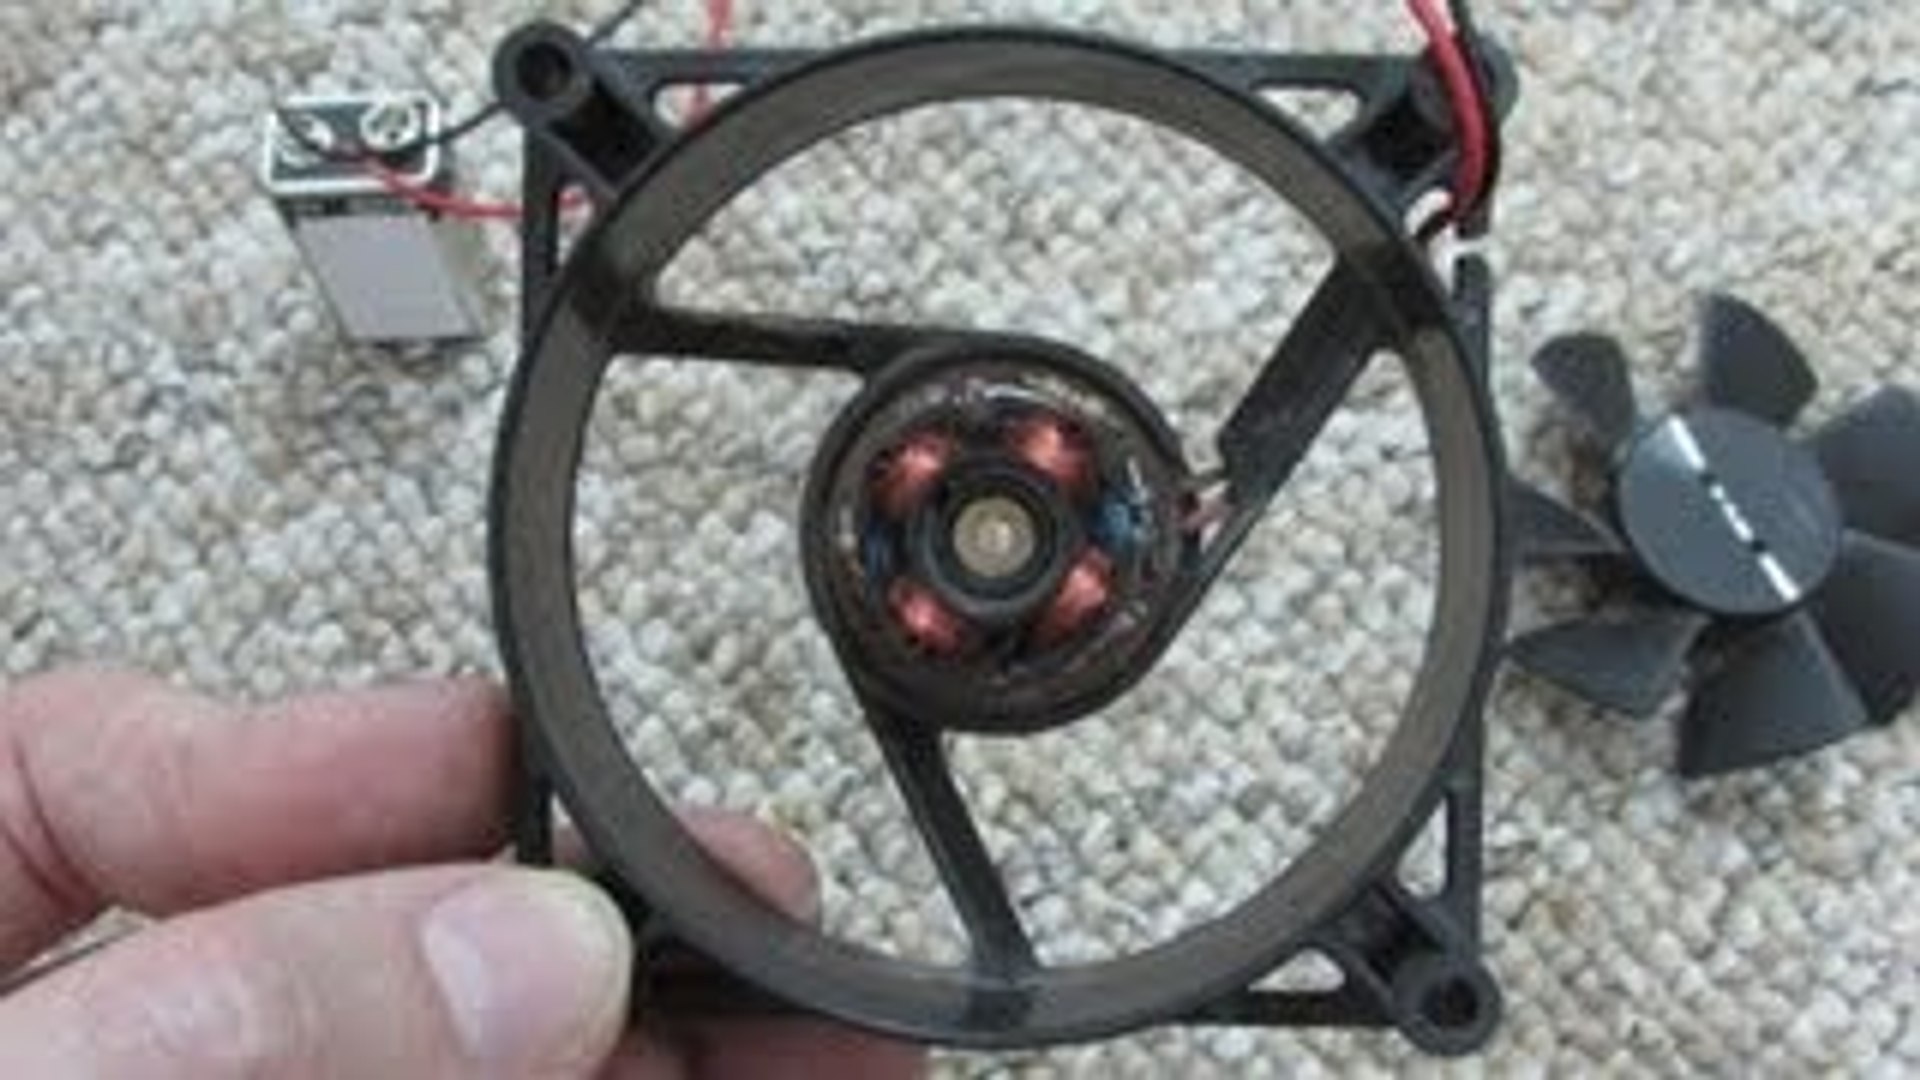 Generador de energía con imanes (Free energy generator with magnets) -  Dailymotion Video